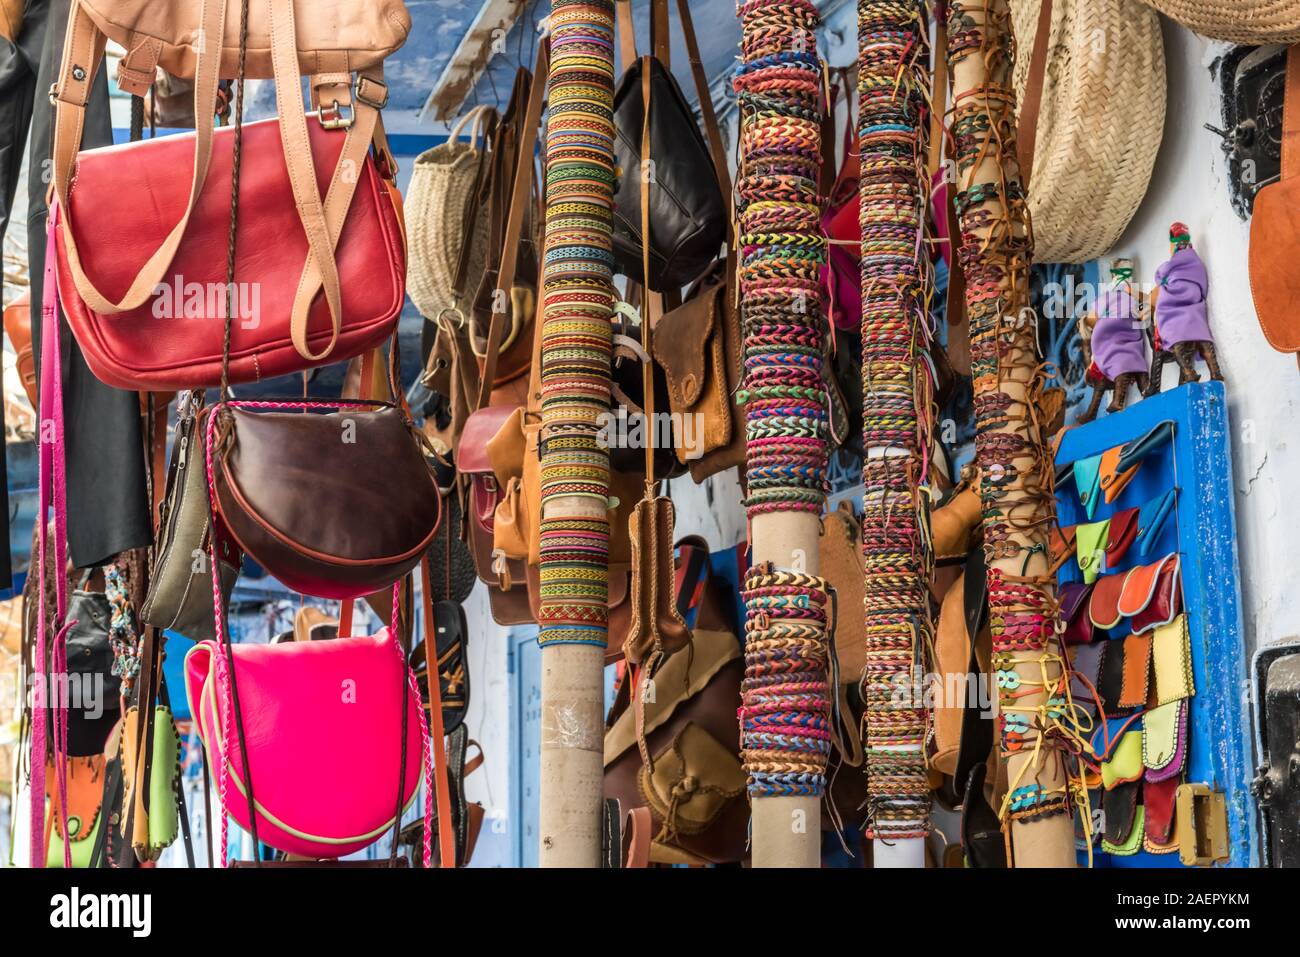 En osier artisanat chapeaux, sacs et autres souvenirs dans le marché du Maroc Banque D'Images